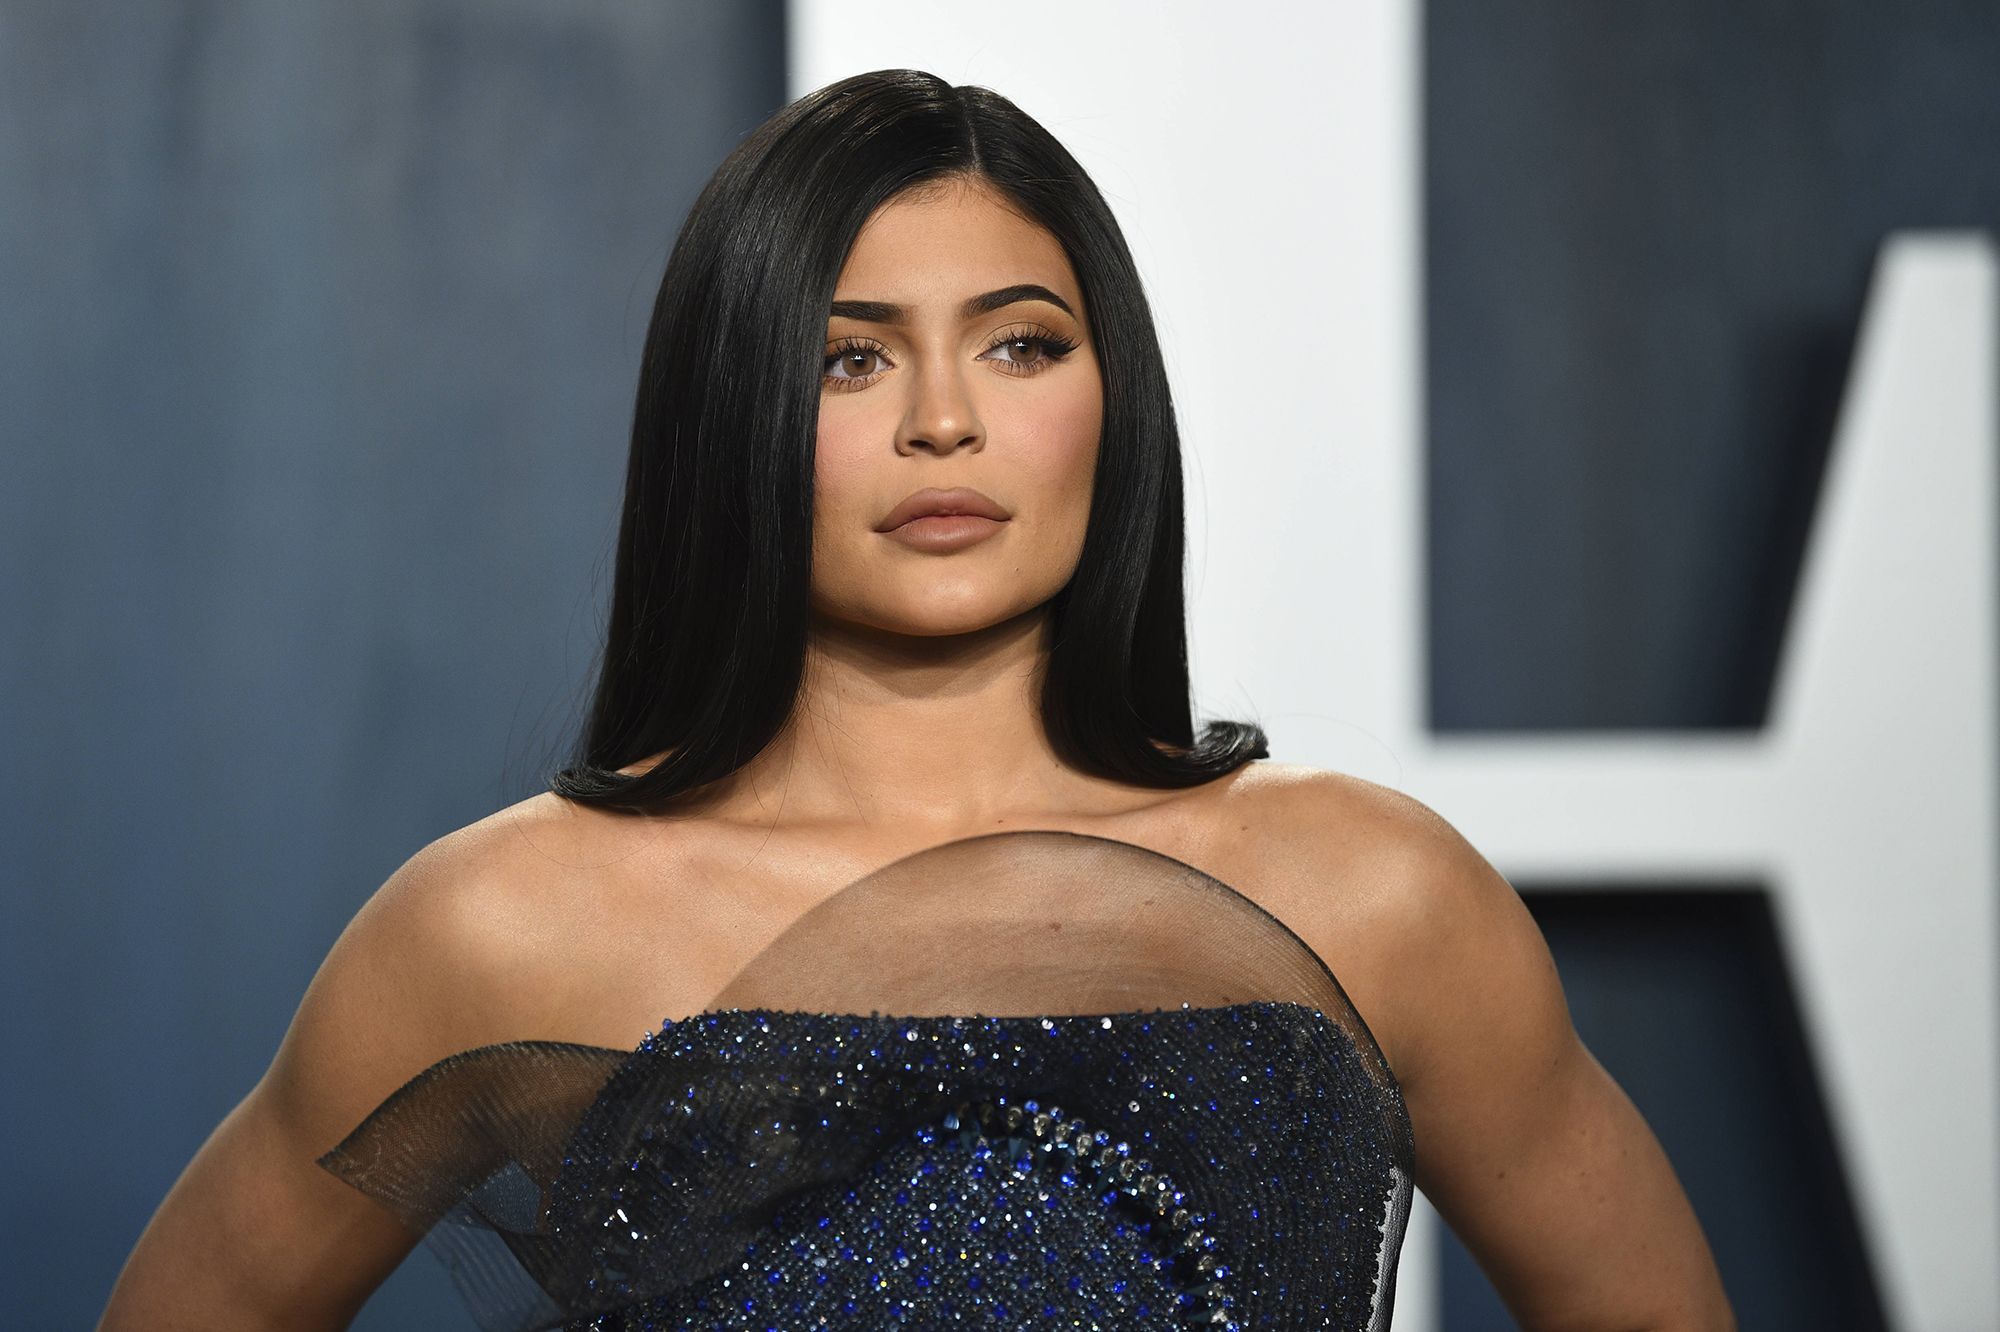 Kylie Jenner dément les propos d'une influenceuse qui l'accuse de harcèlement